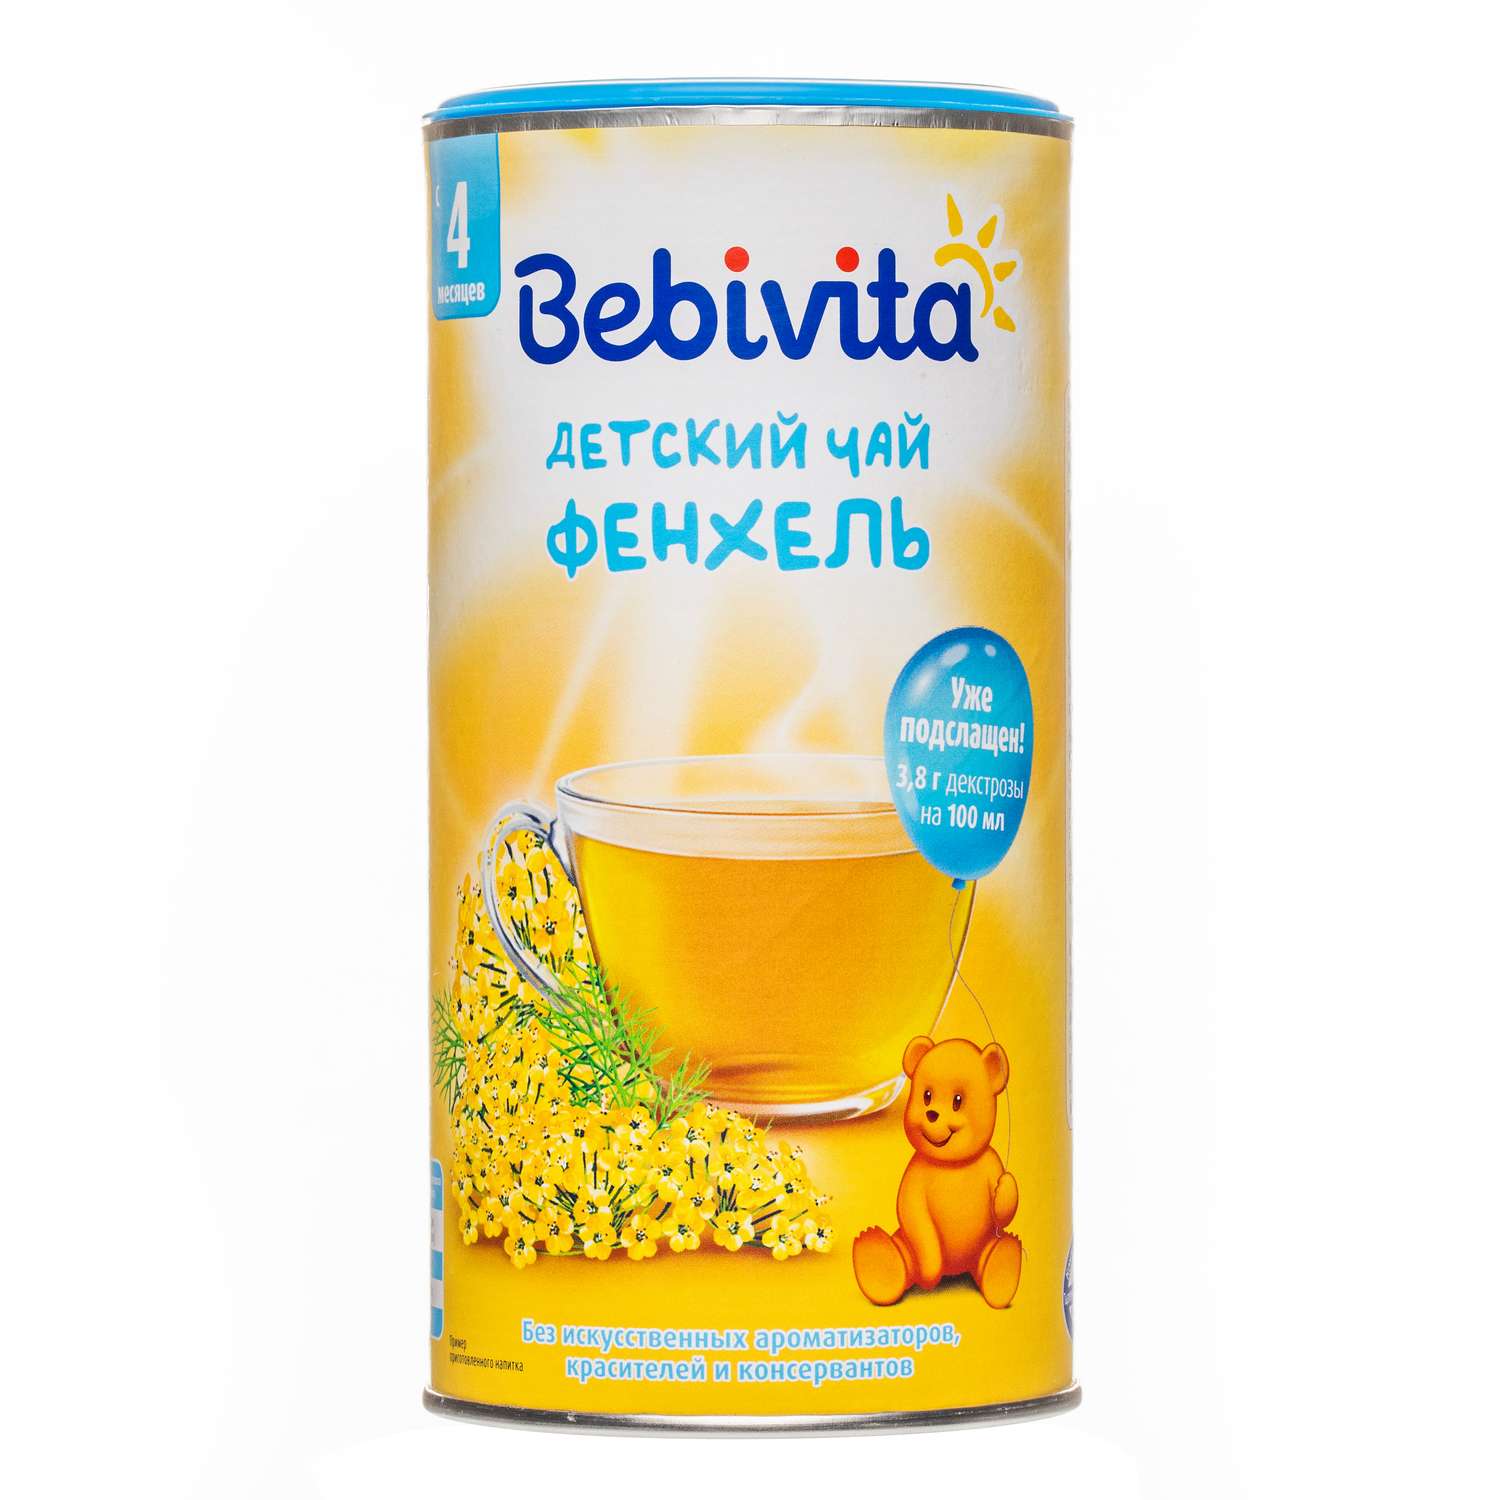 Чай Bebivita фенхель гранулированный 200г с 4месяцев - фото 2